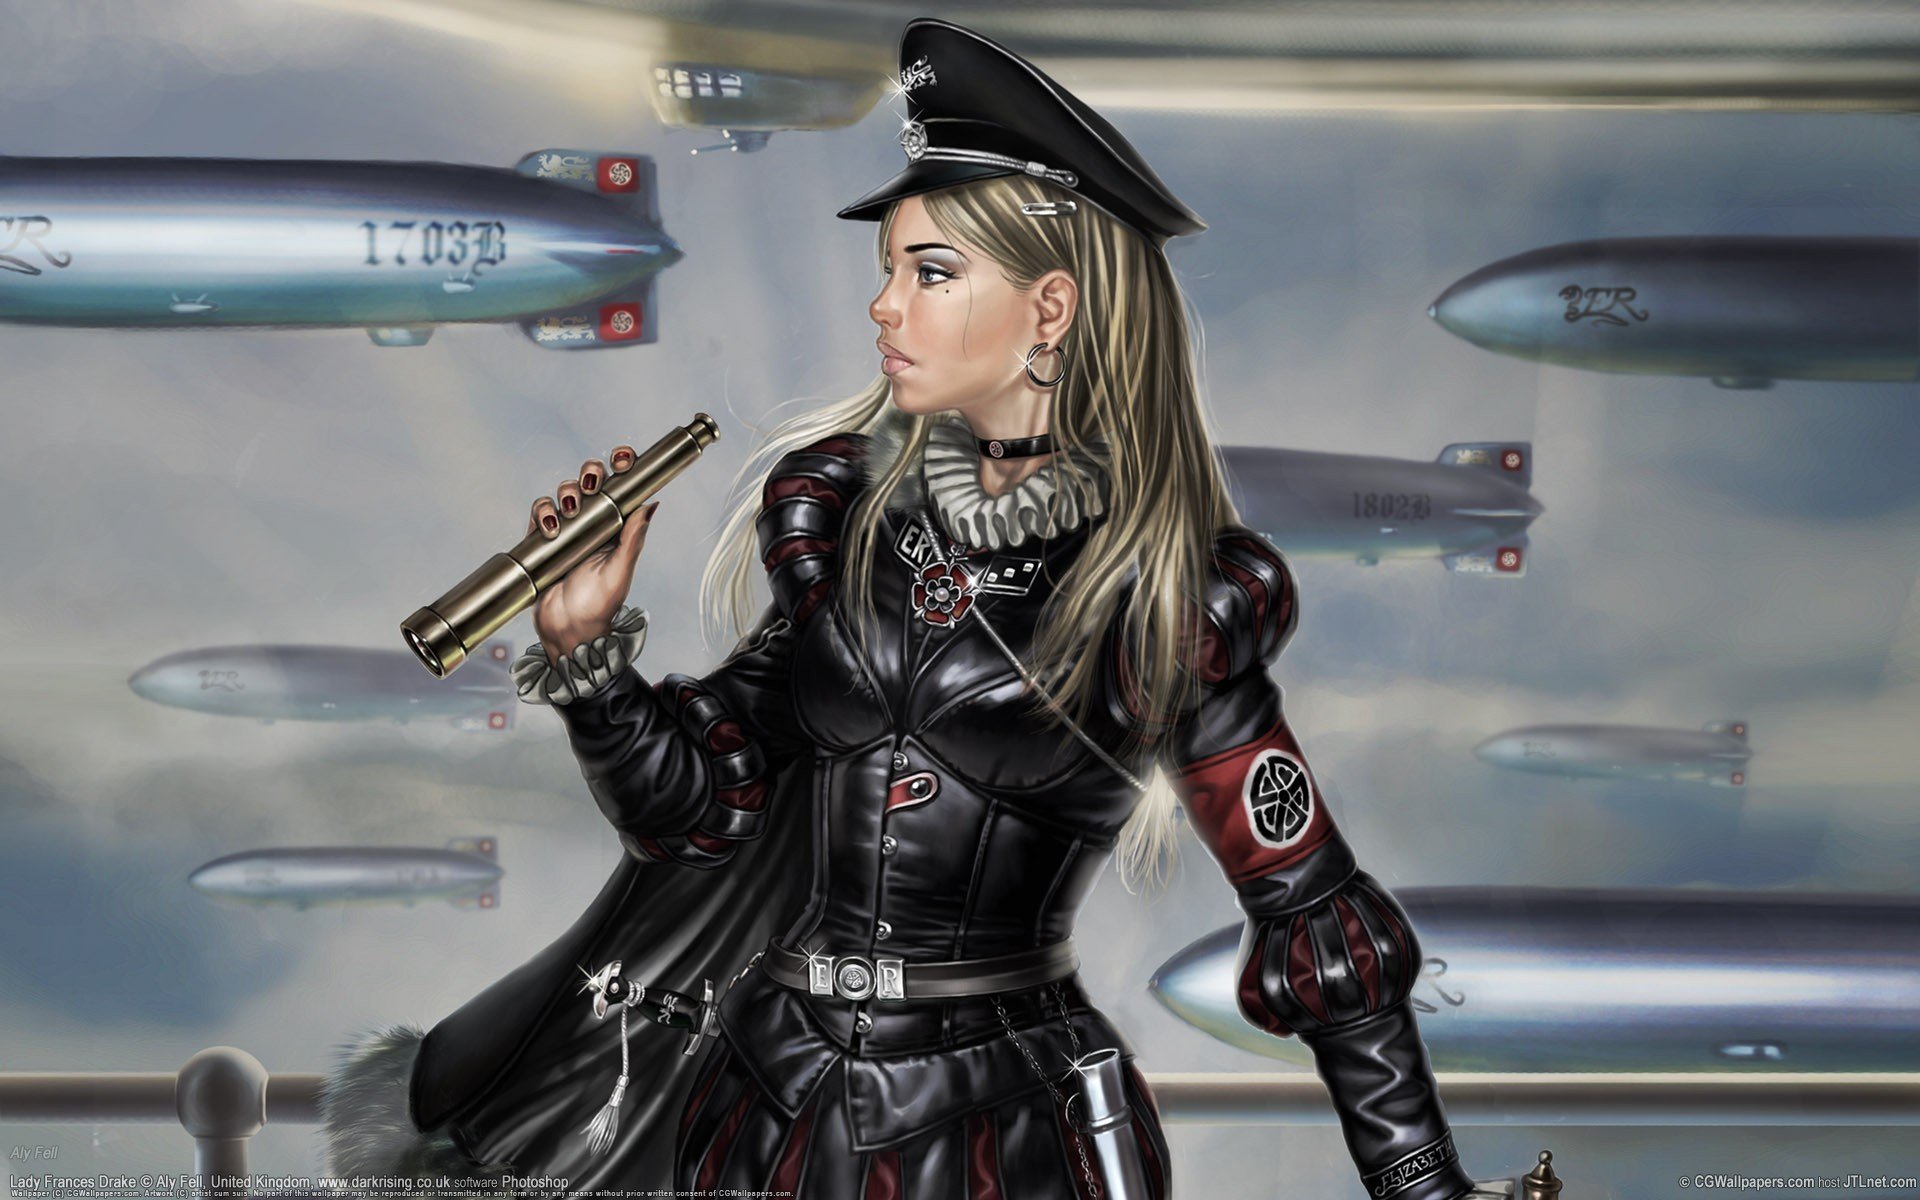 women, Uniforms, Weapons, Earrings, Vehicles, Zeppelin Wallpaper